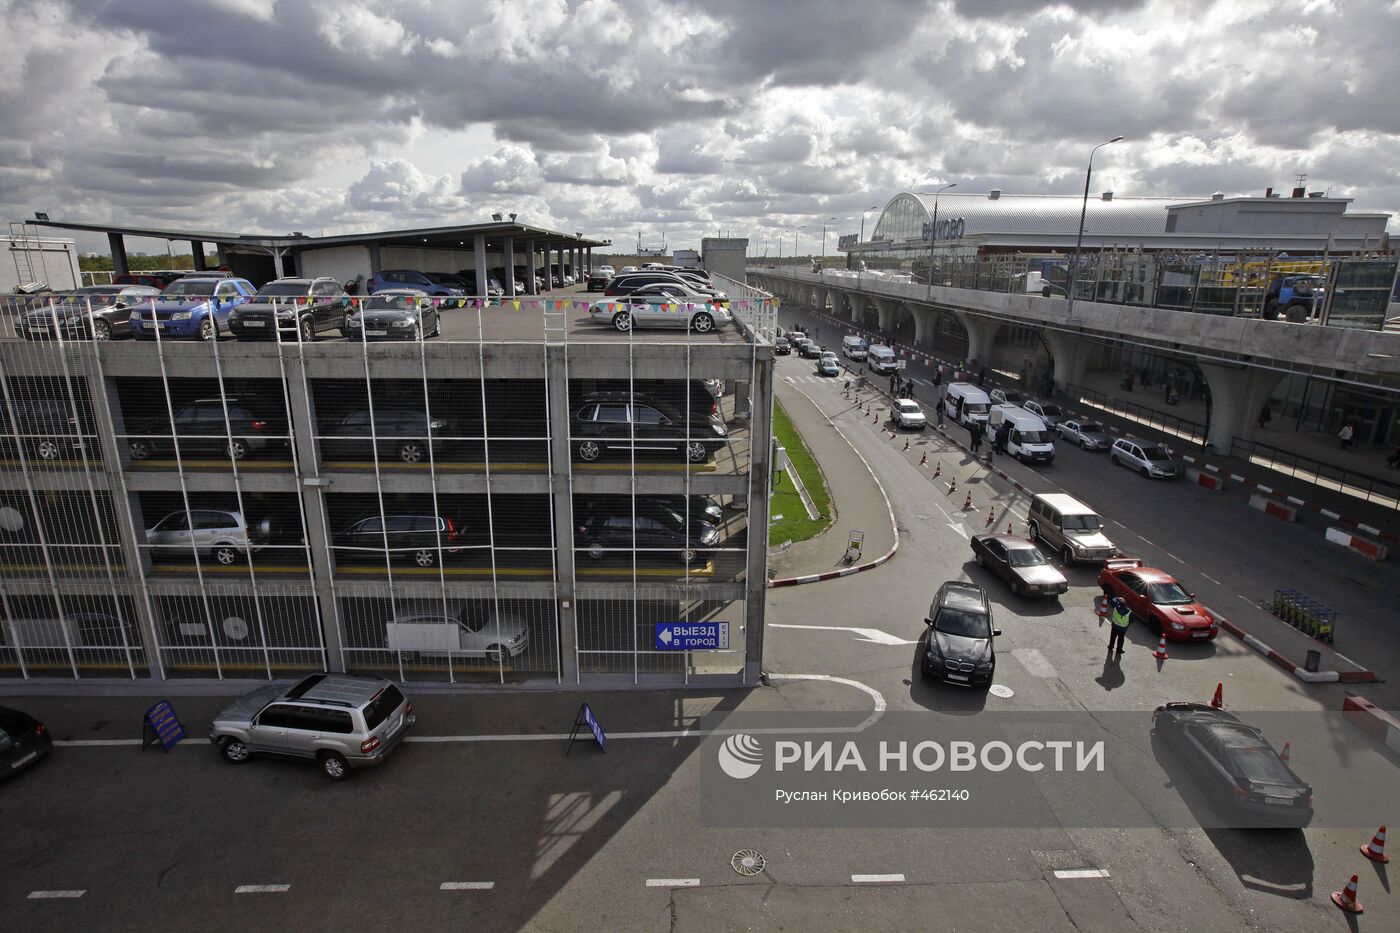 Многоярусная парковка международного аэропорта "Внуково"